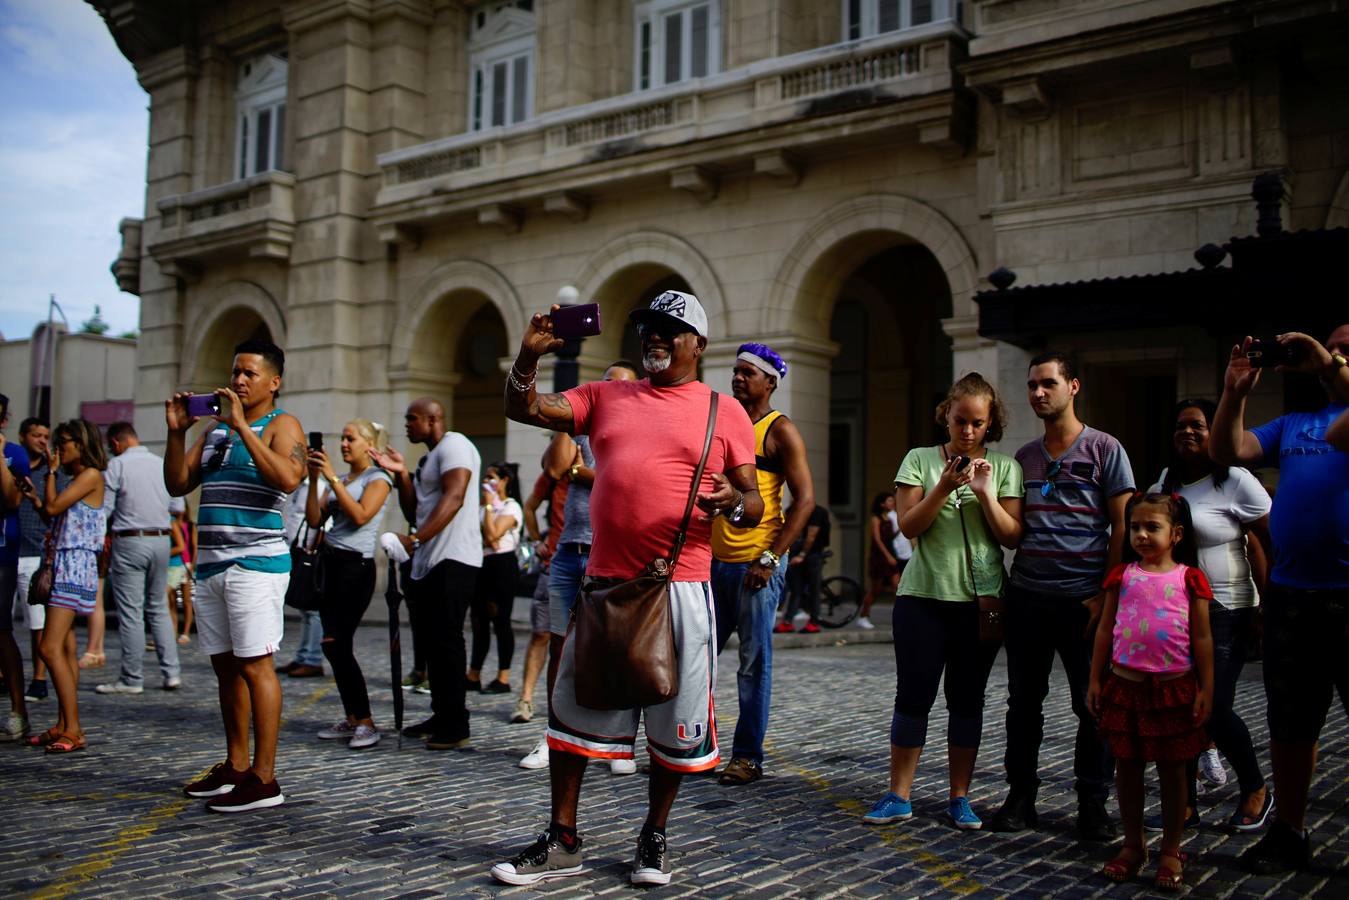 Integrantes de los «Rote Funken», la agrupación más antigua del Carnaval de Colonia, en Alemania, bailan junto a los de la comparsa habanera Los Guaracheros de Regla en el Paseo del Prado en La Habana (Cuba). Las dos agrupaciones desfilaron juntas como parte de un intercambio cultural entre Alemania y Cuba.